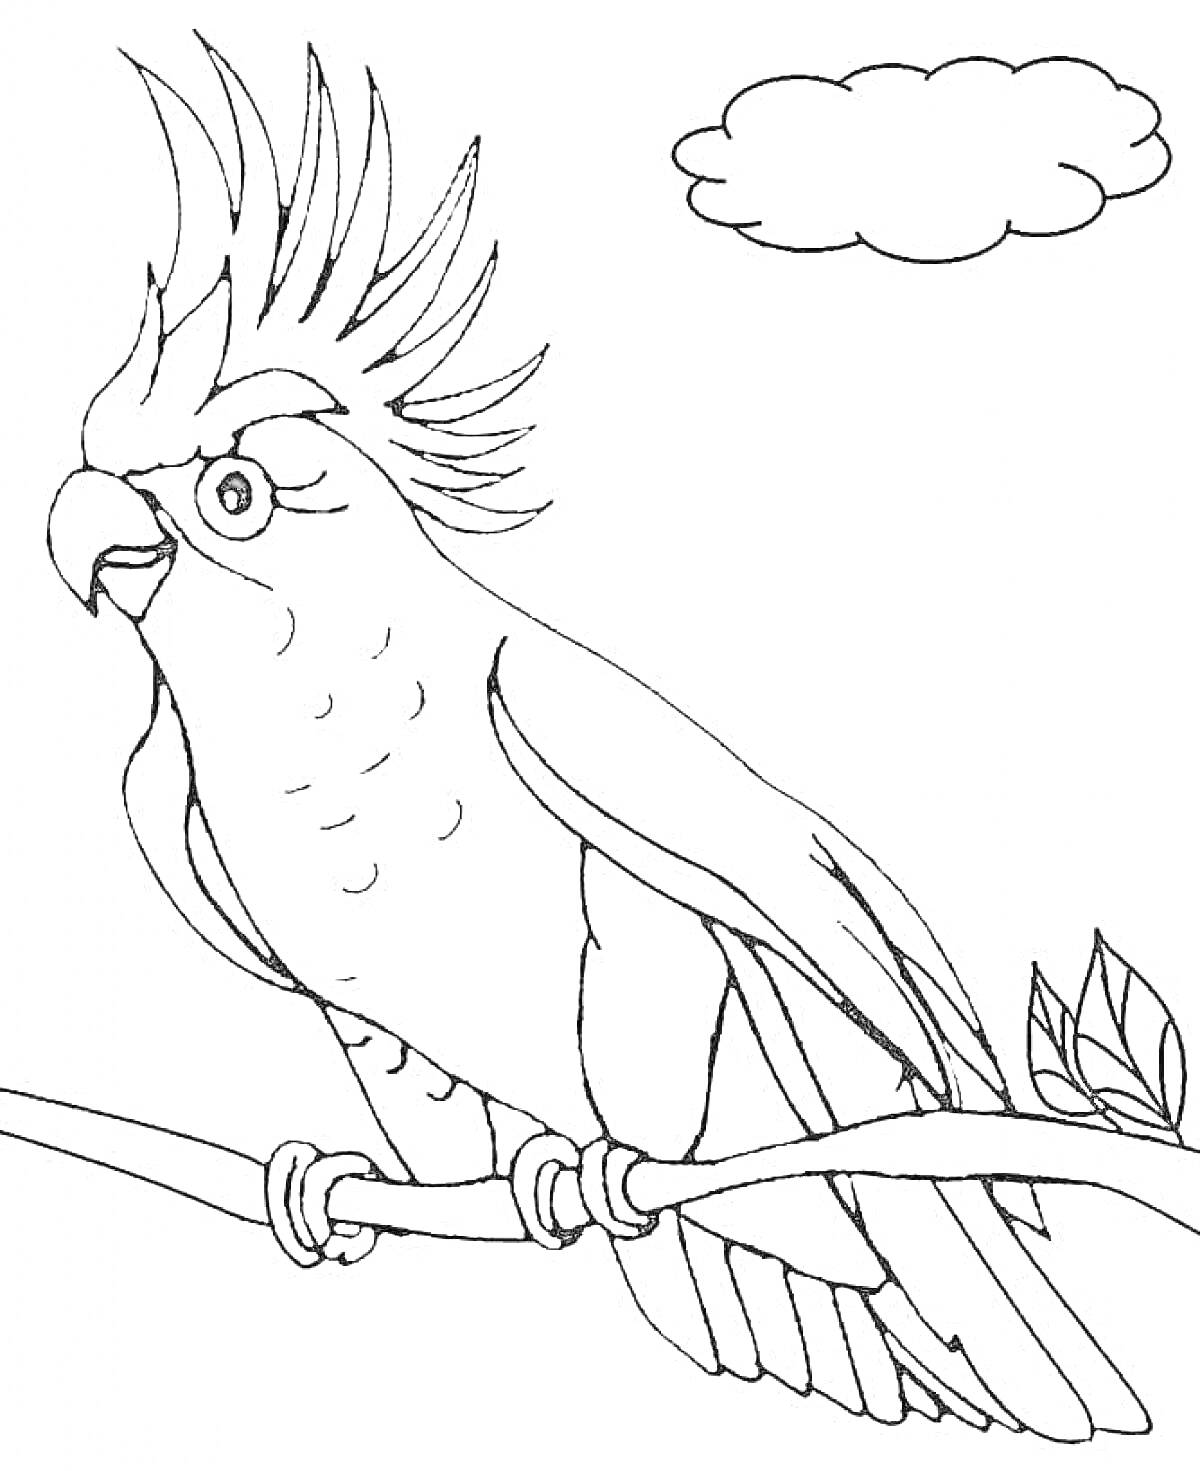 Раскраска попугай на ветке с листьями и облако